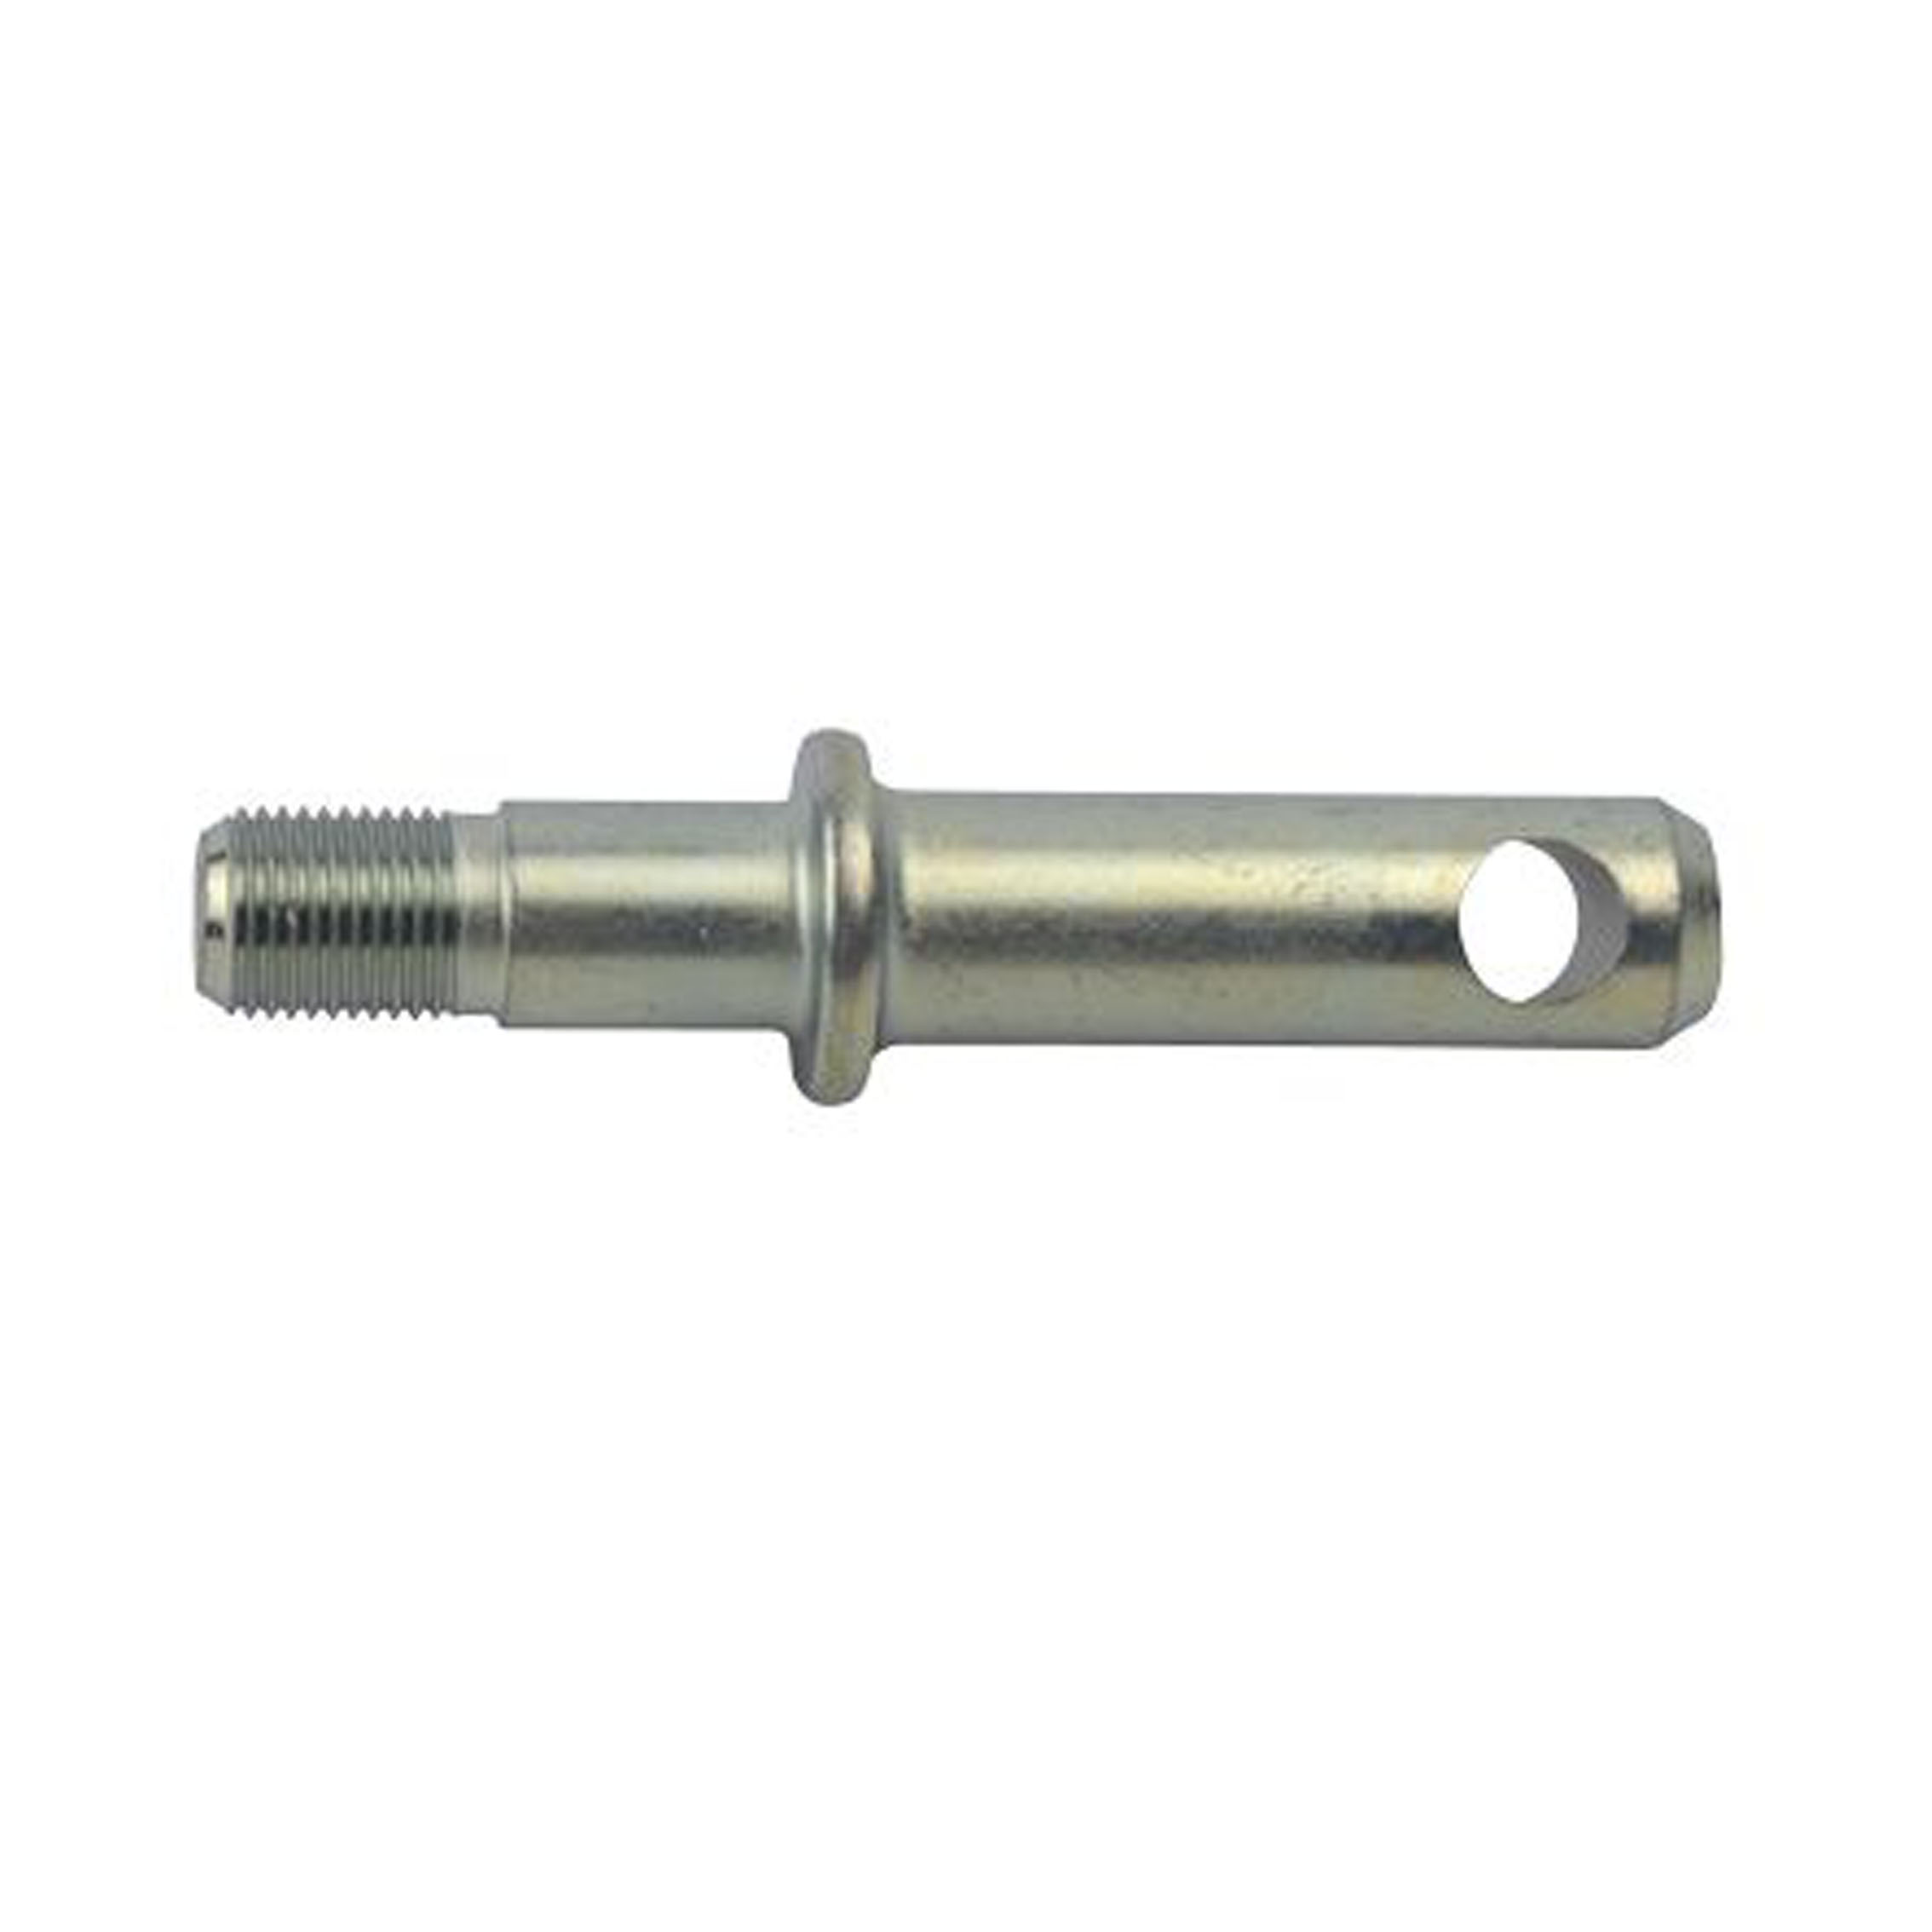 TC432-37692  Lower Pins Fits For Kubota